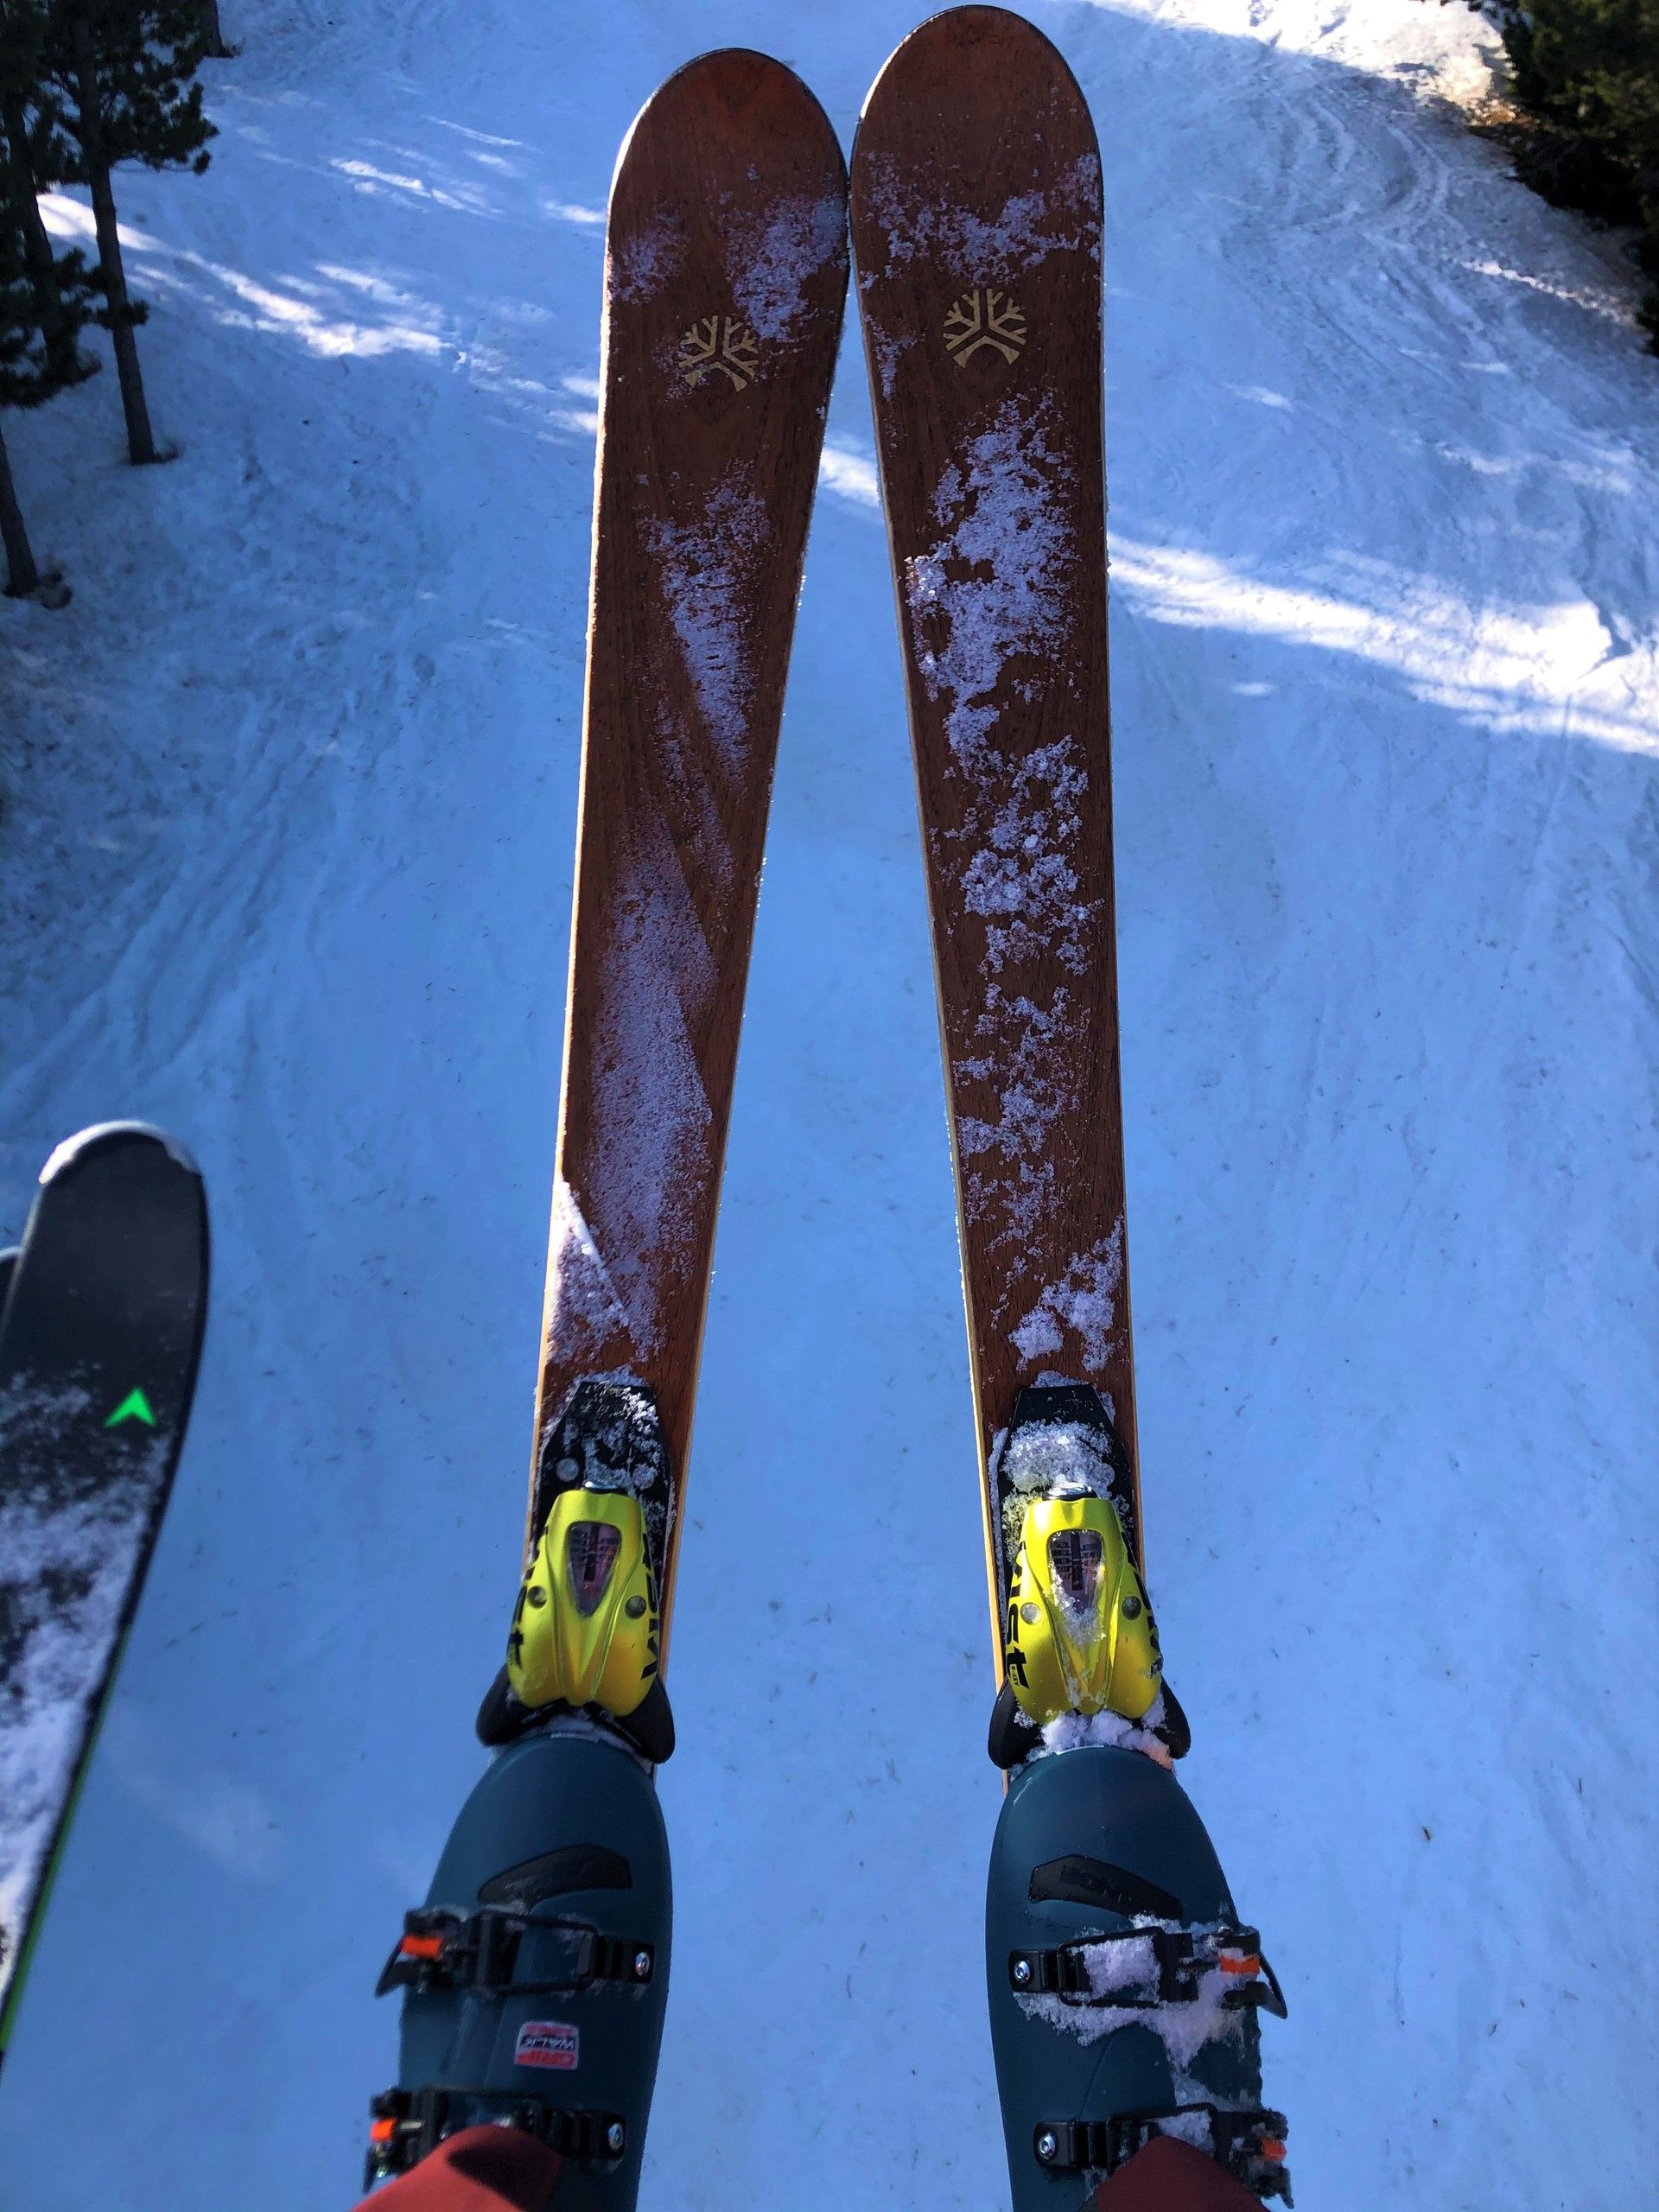 Liken skis